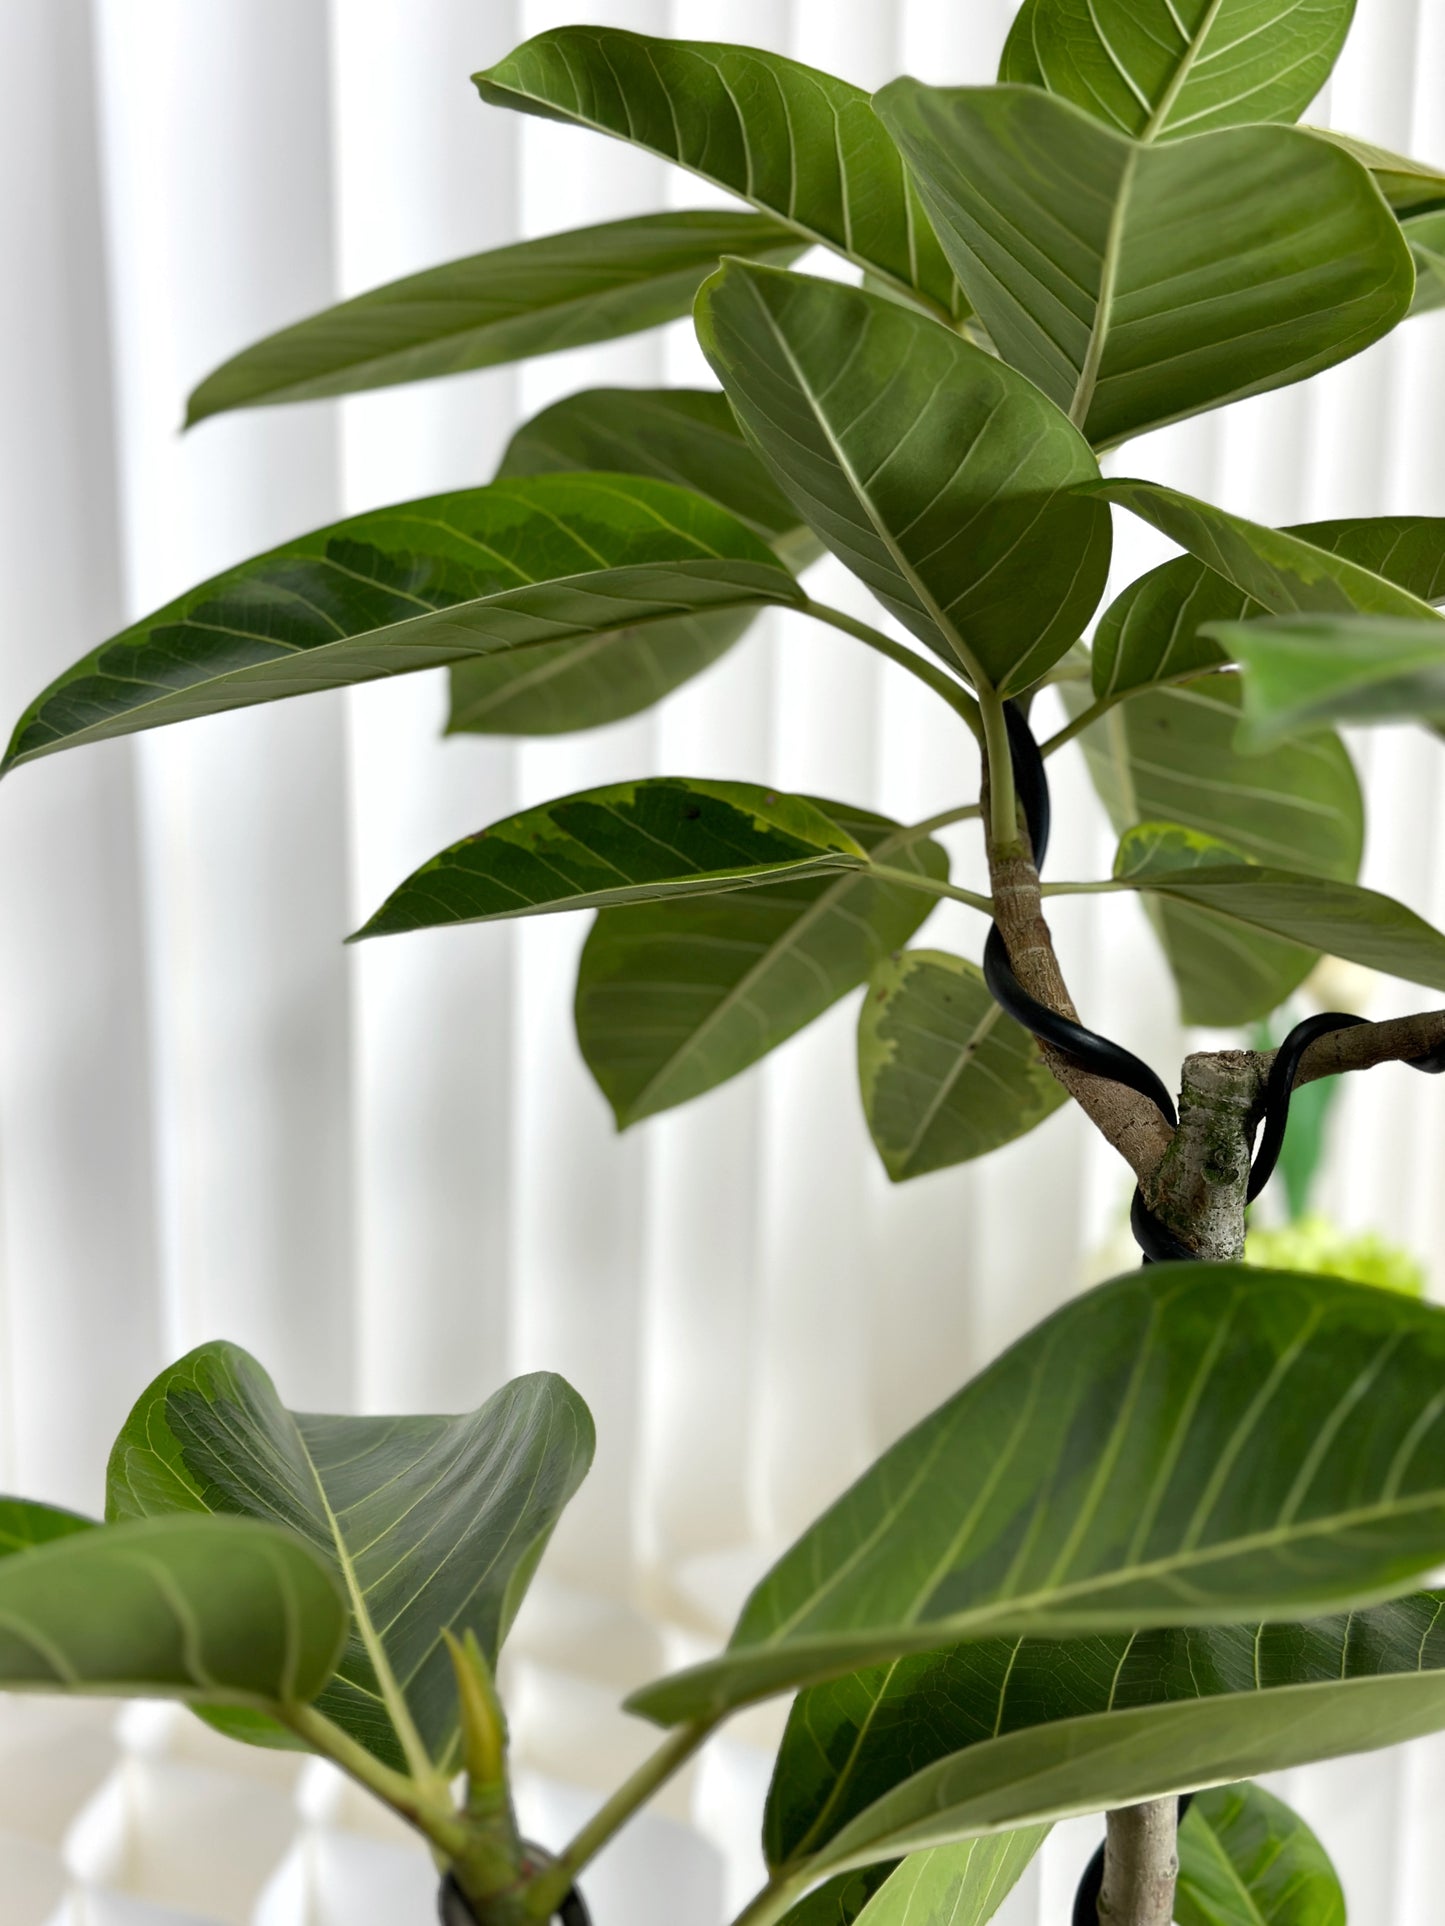 造型斑葉高山榕(富貴榕) | Styled Ficus Benghalensis Variegata